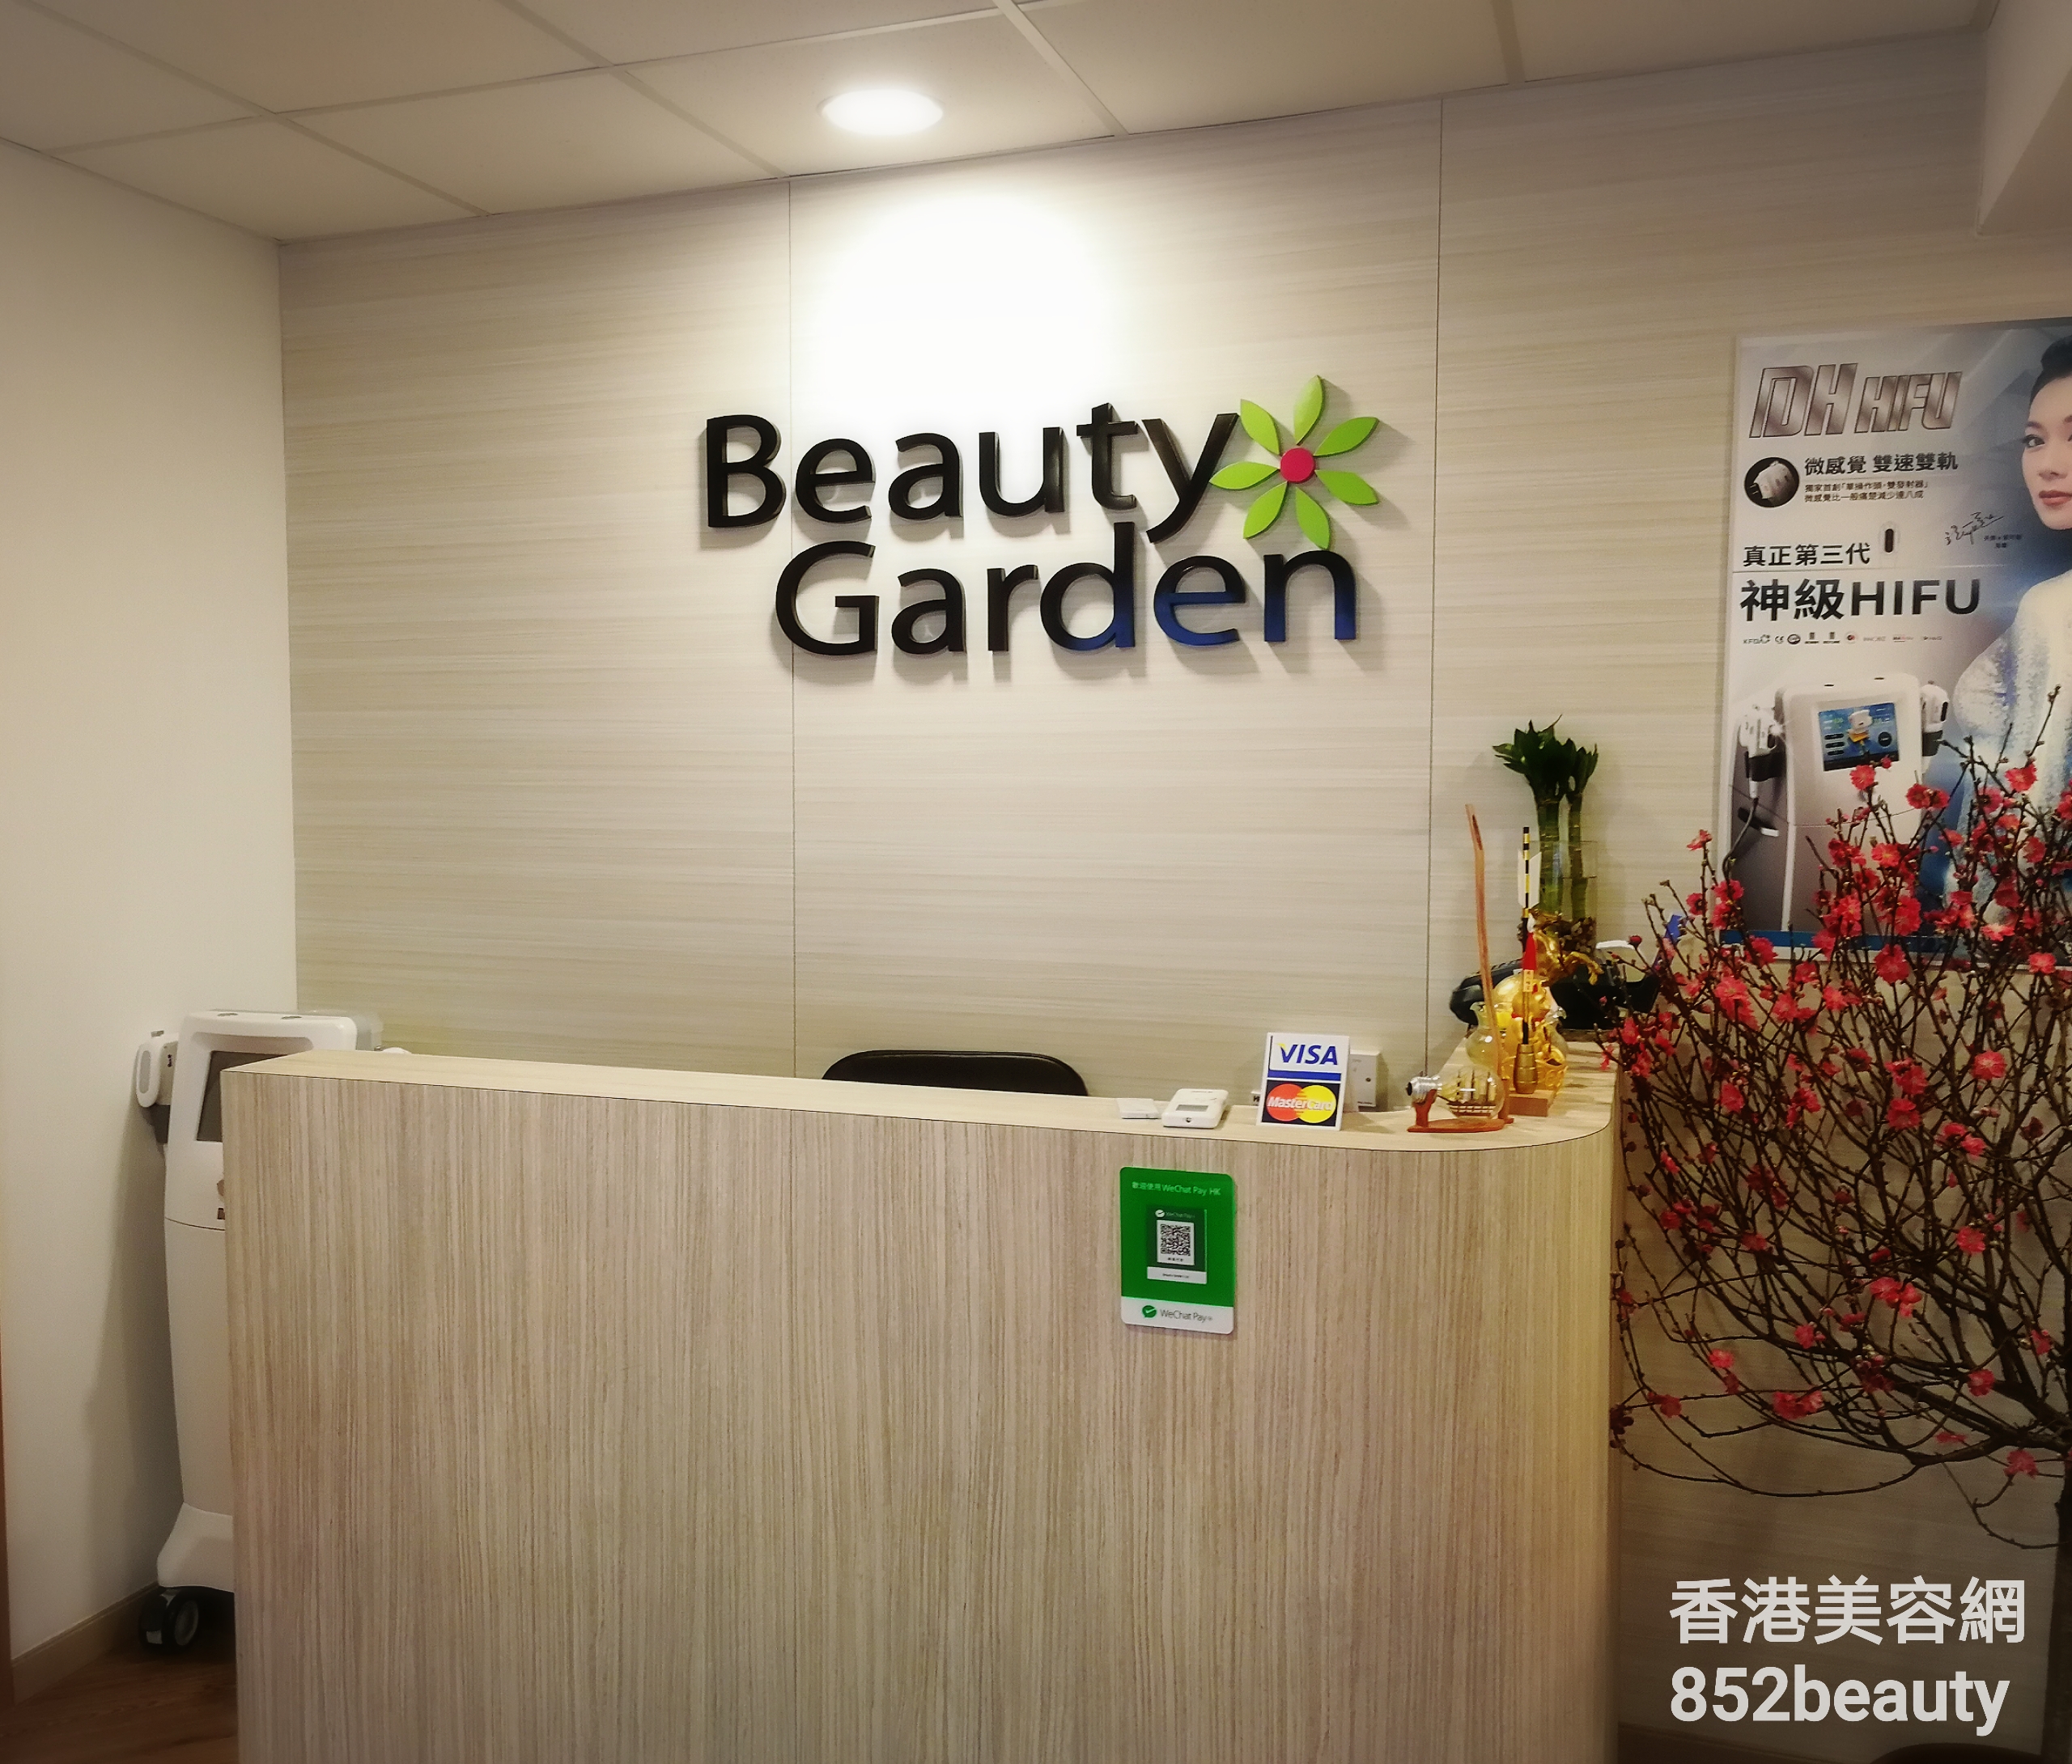 香港美容網 Hong Kong Beauty Salon 美容院 / 美容師: Beauty Garden